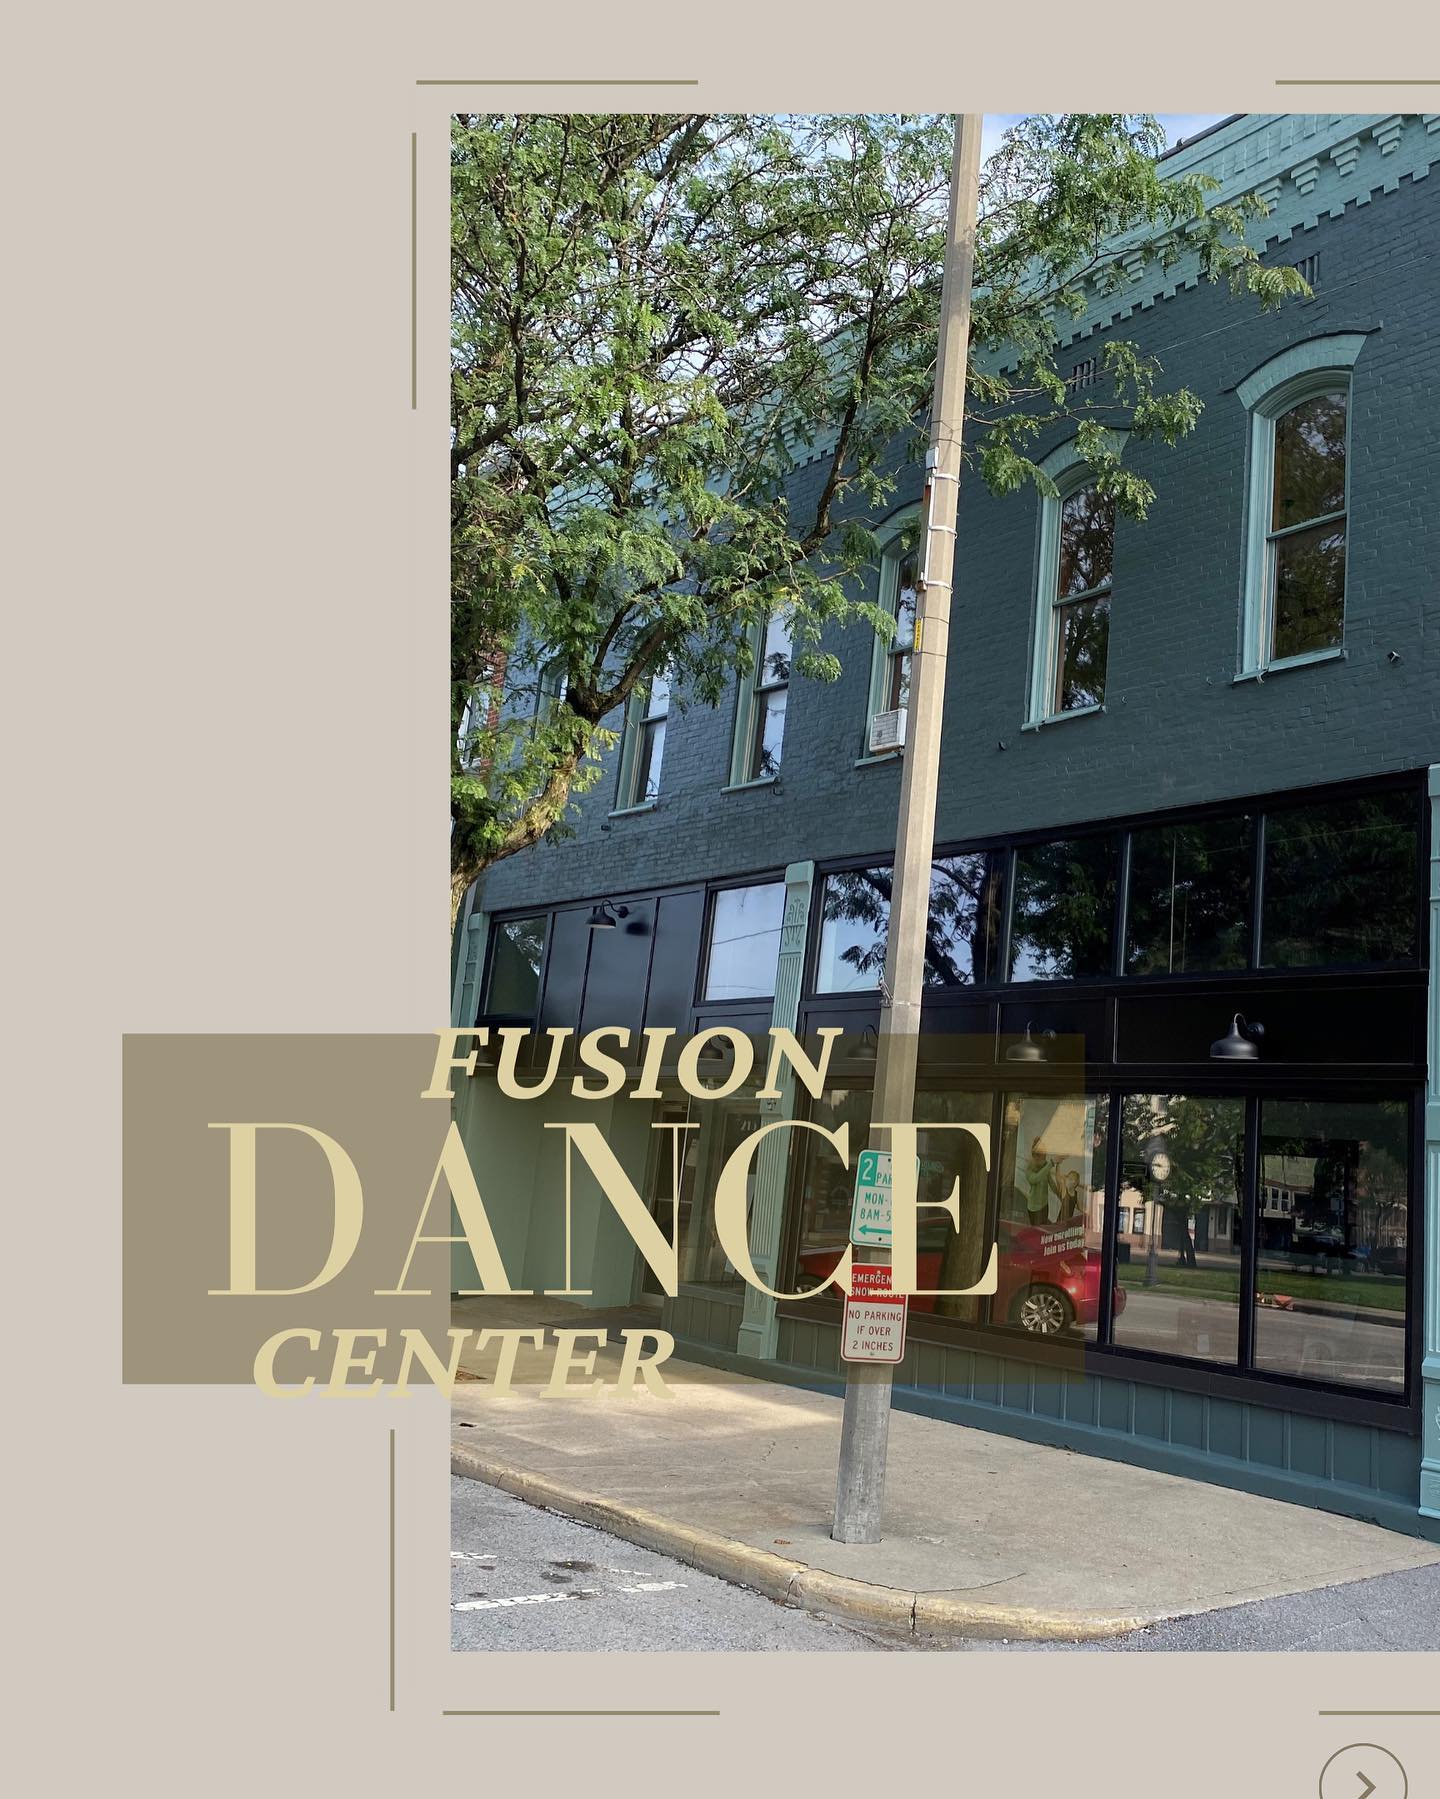 Fusion Dance Center 215 West College Avenue, Greenville Illinois 62246